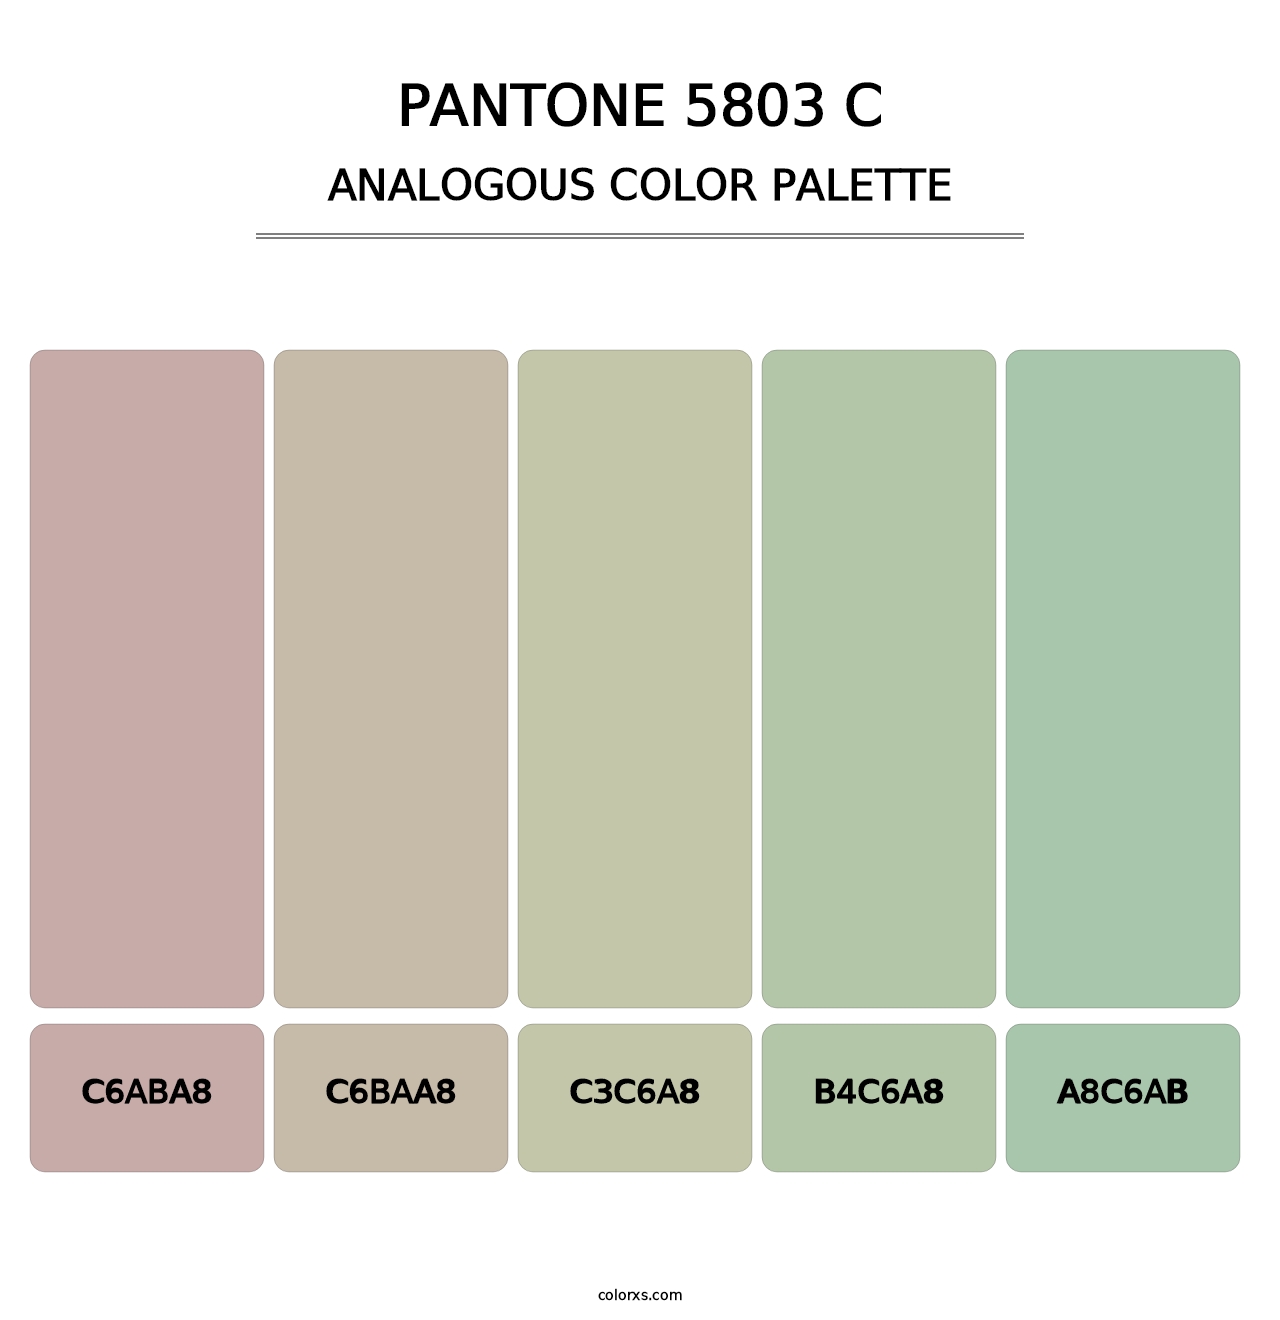 PANTONE 5803 C - Analogous Color Palette